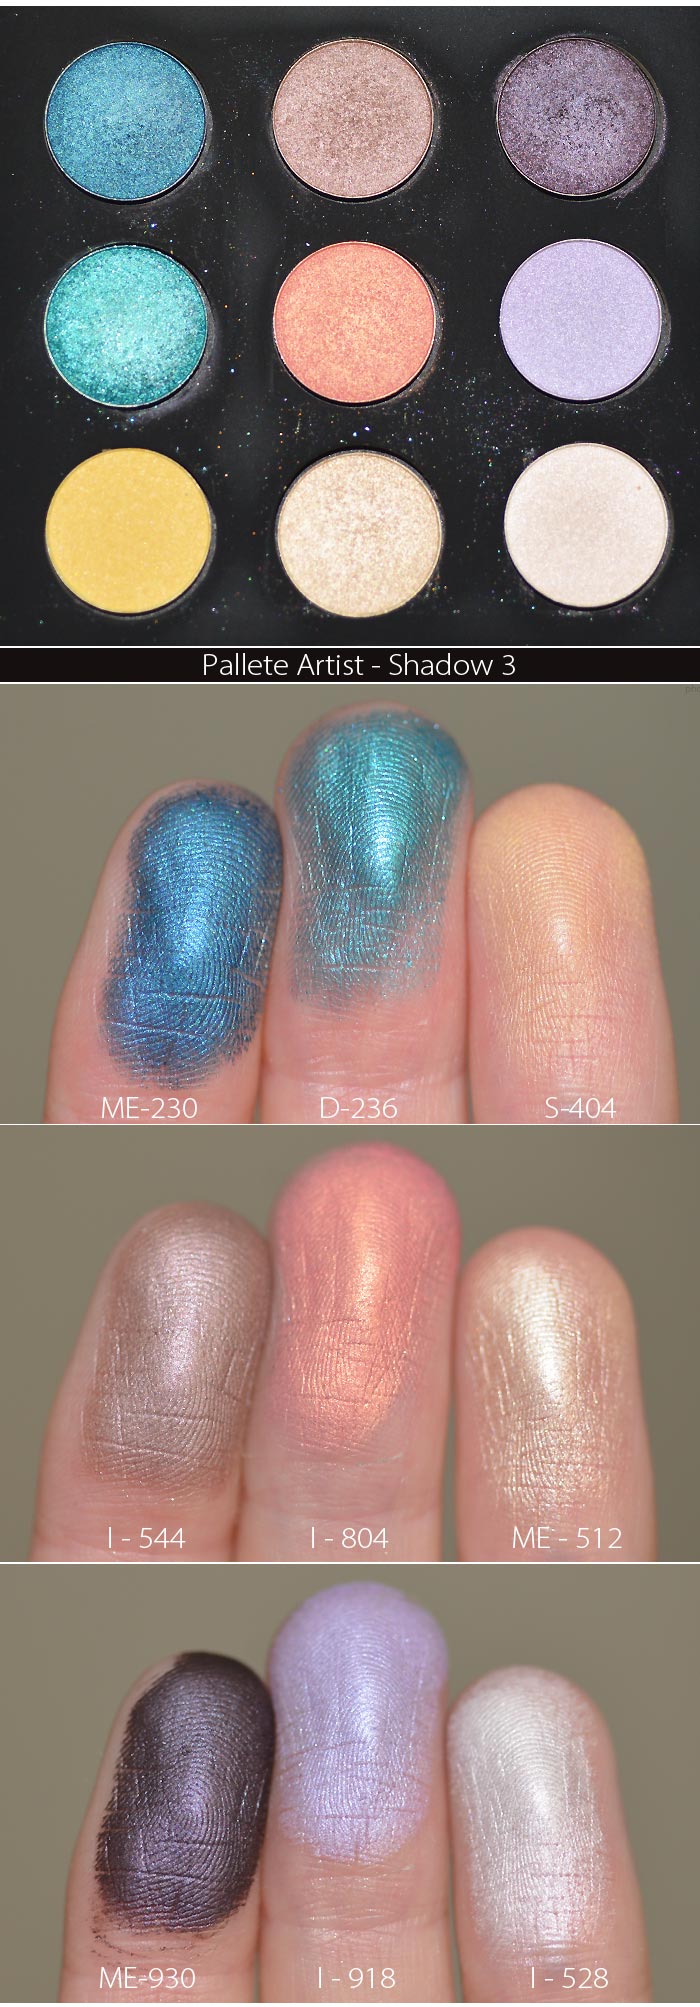 palette-artist-shadow-3